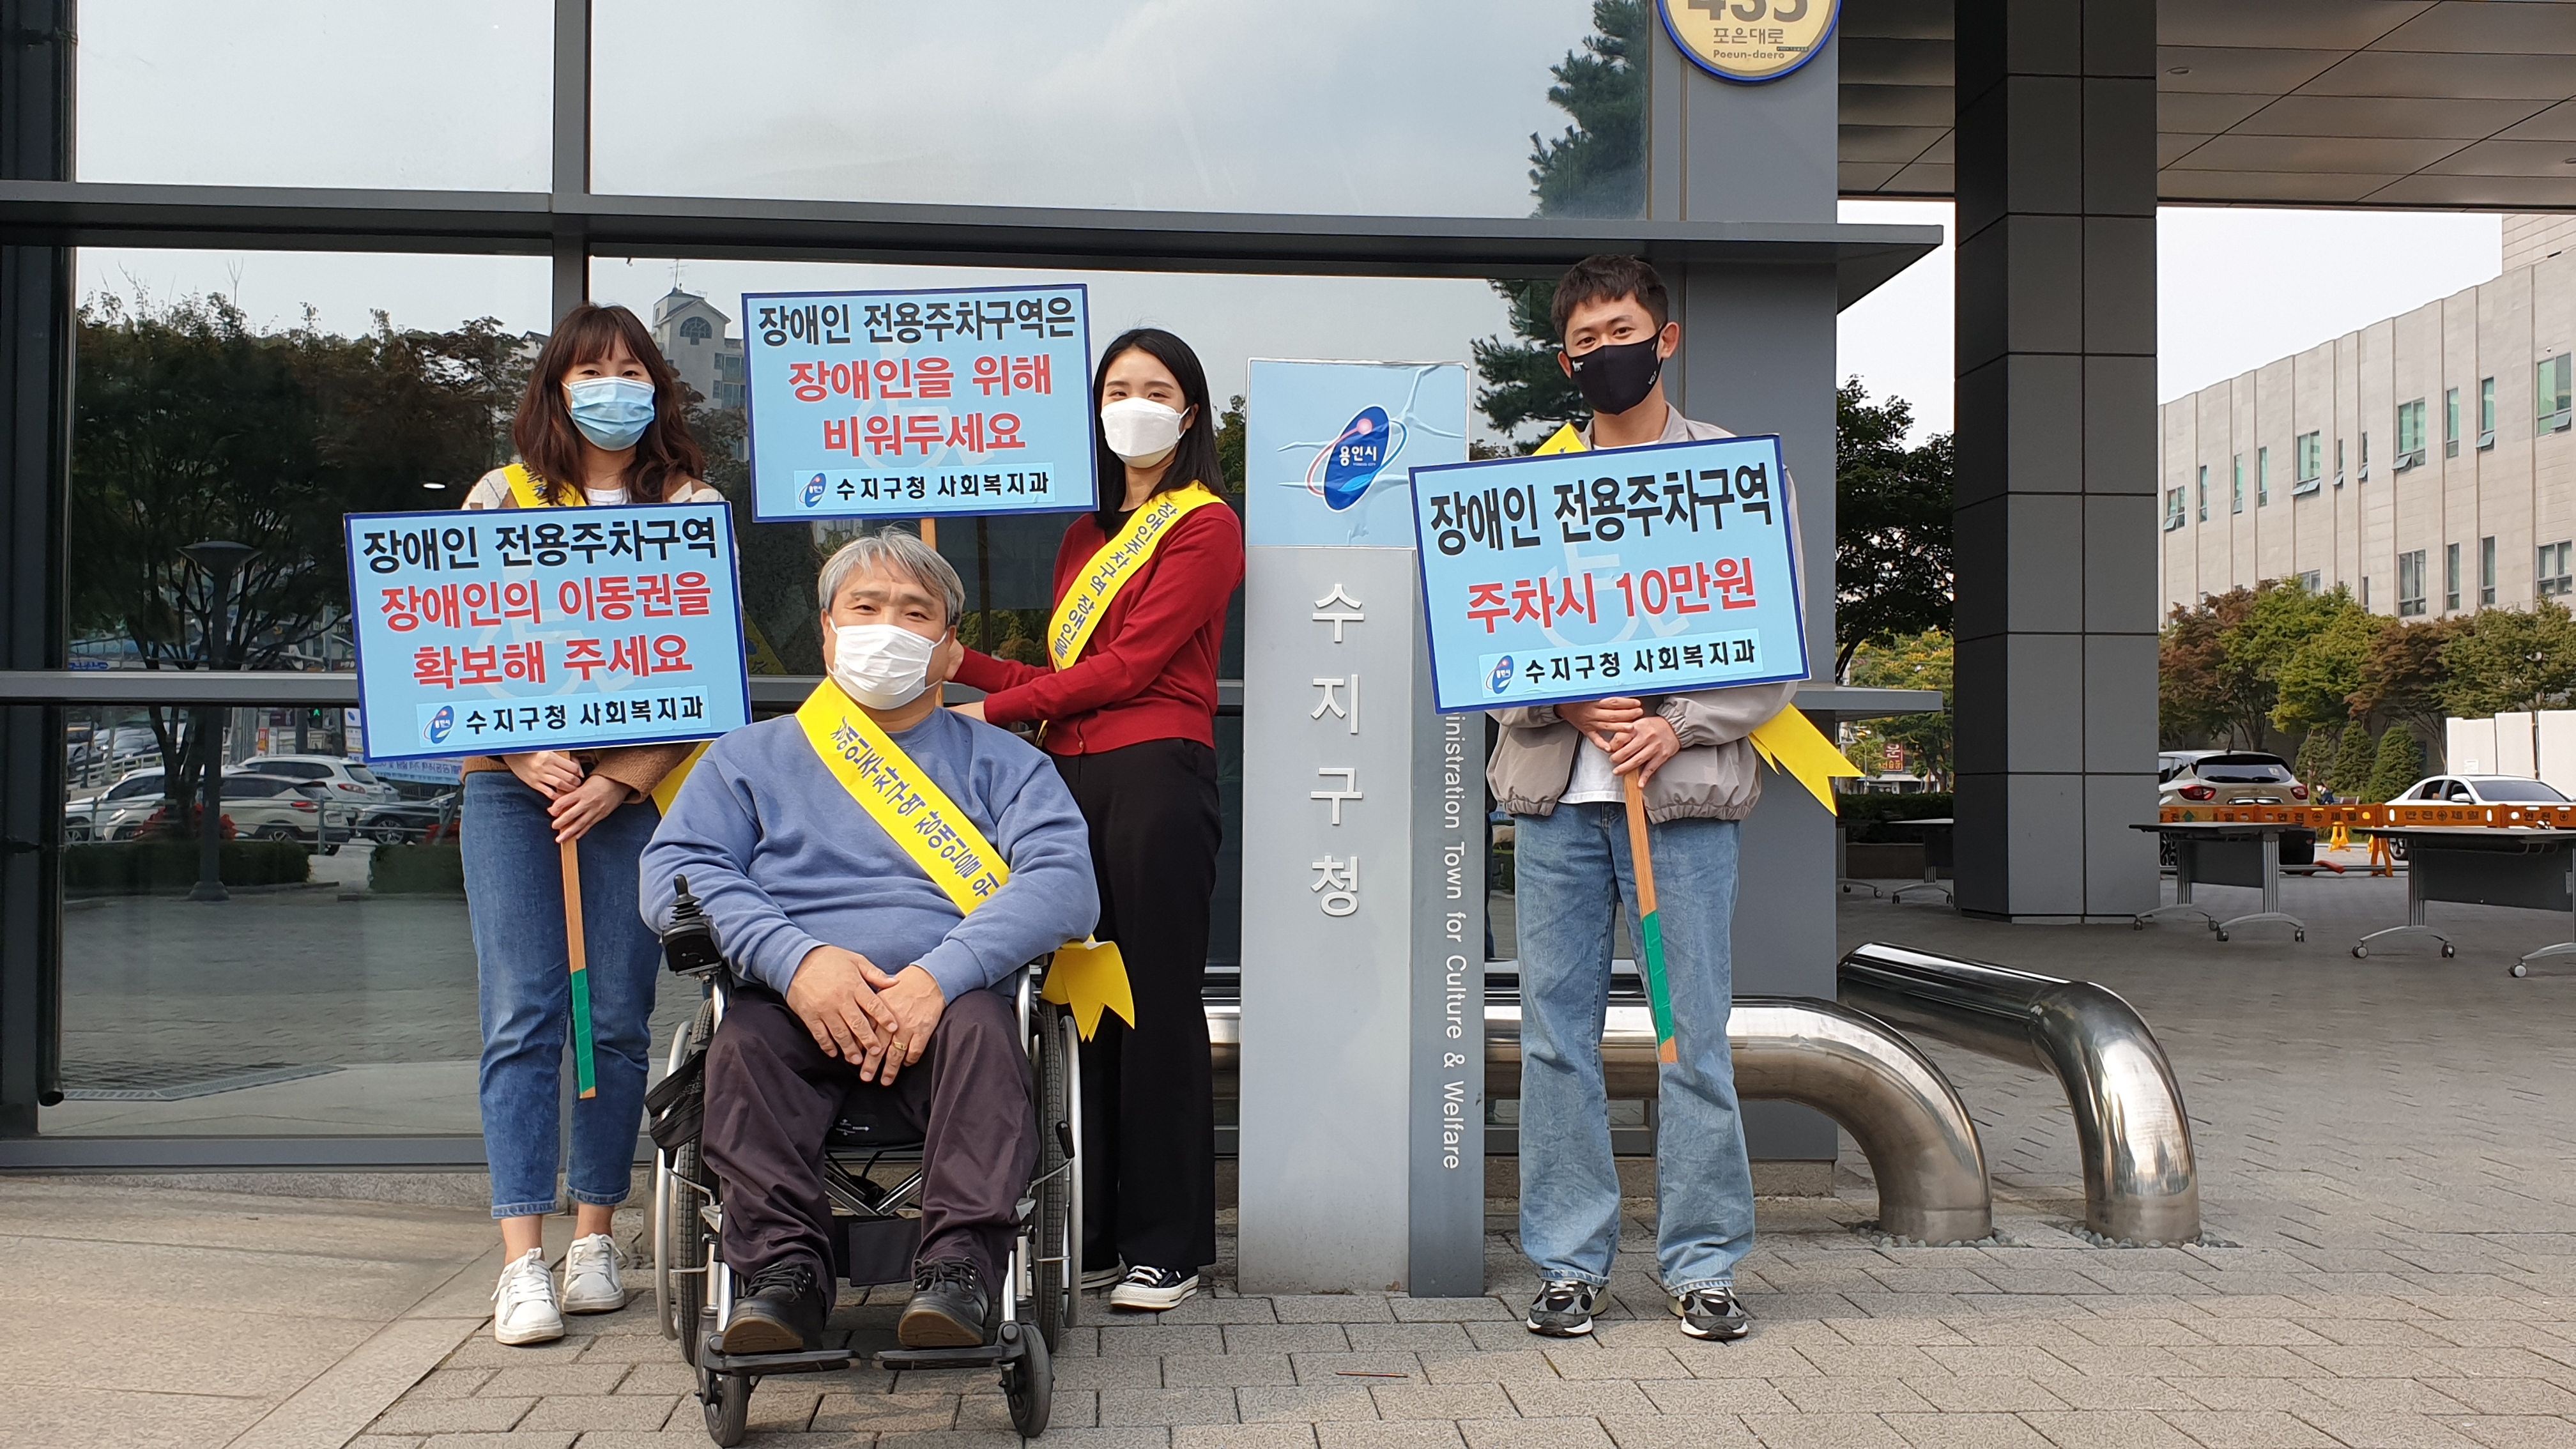 수지구, 장애인주차구역 준수 홍보 캠페인 실시